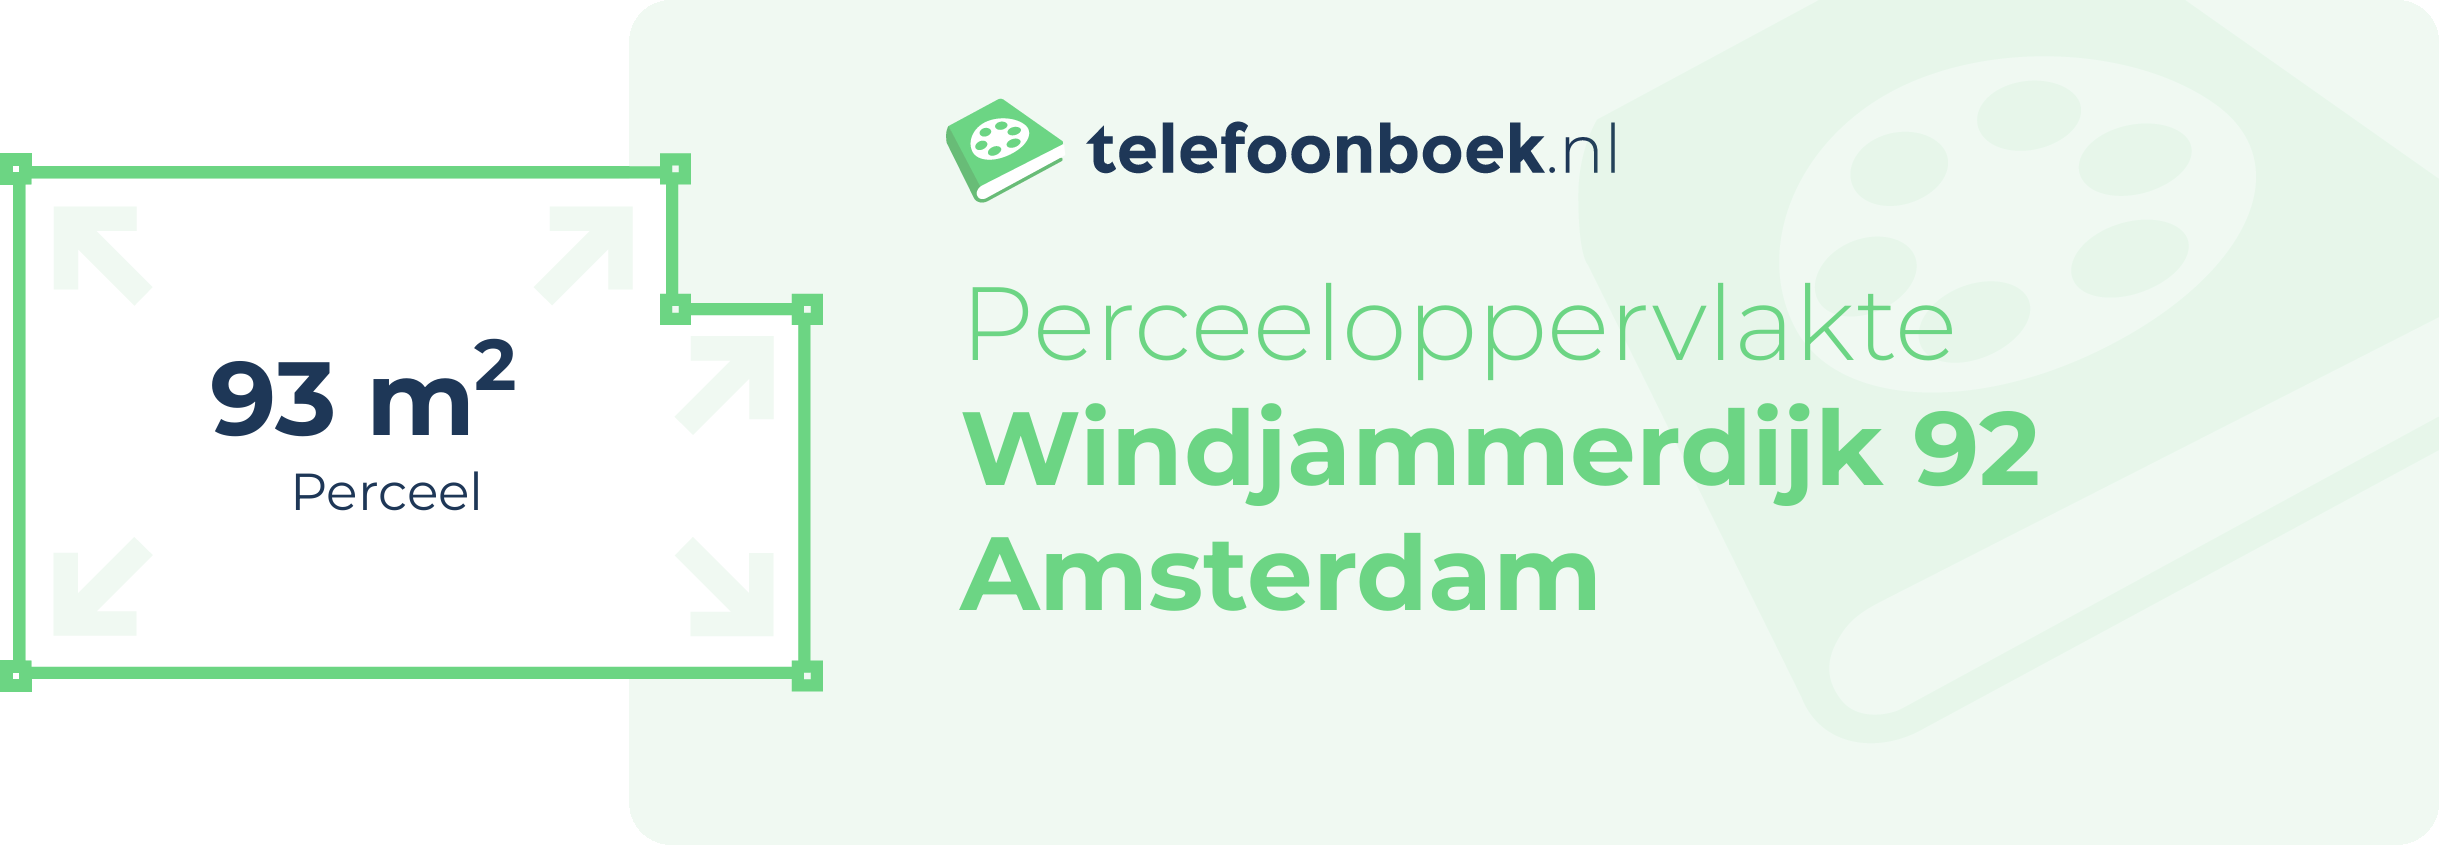 Perceeloppervlakte Windjammerdijk 92 Amsterdam